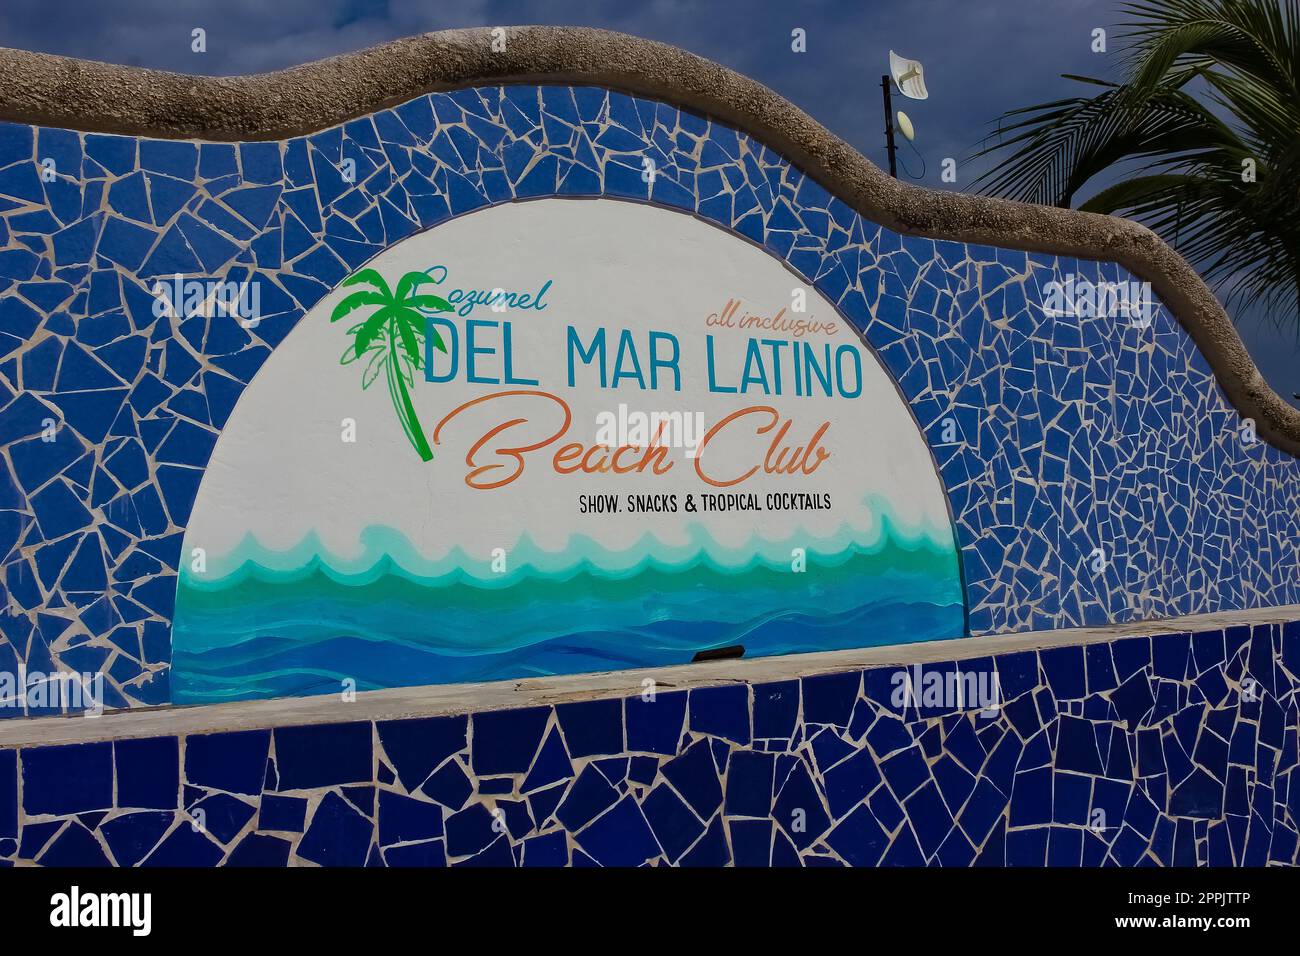 Vista sulla strada del resort cozumel Beach club del mar latino a Cozumel, Messico Foto Stock